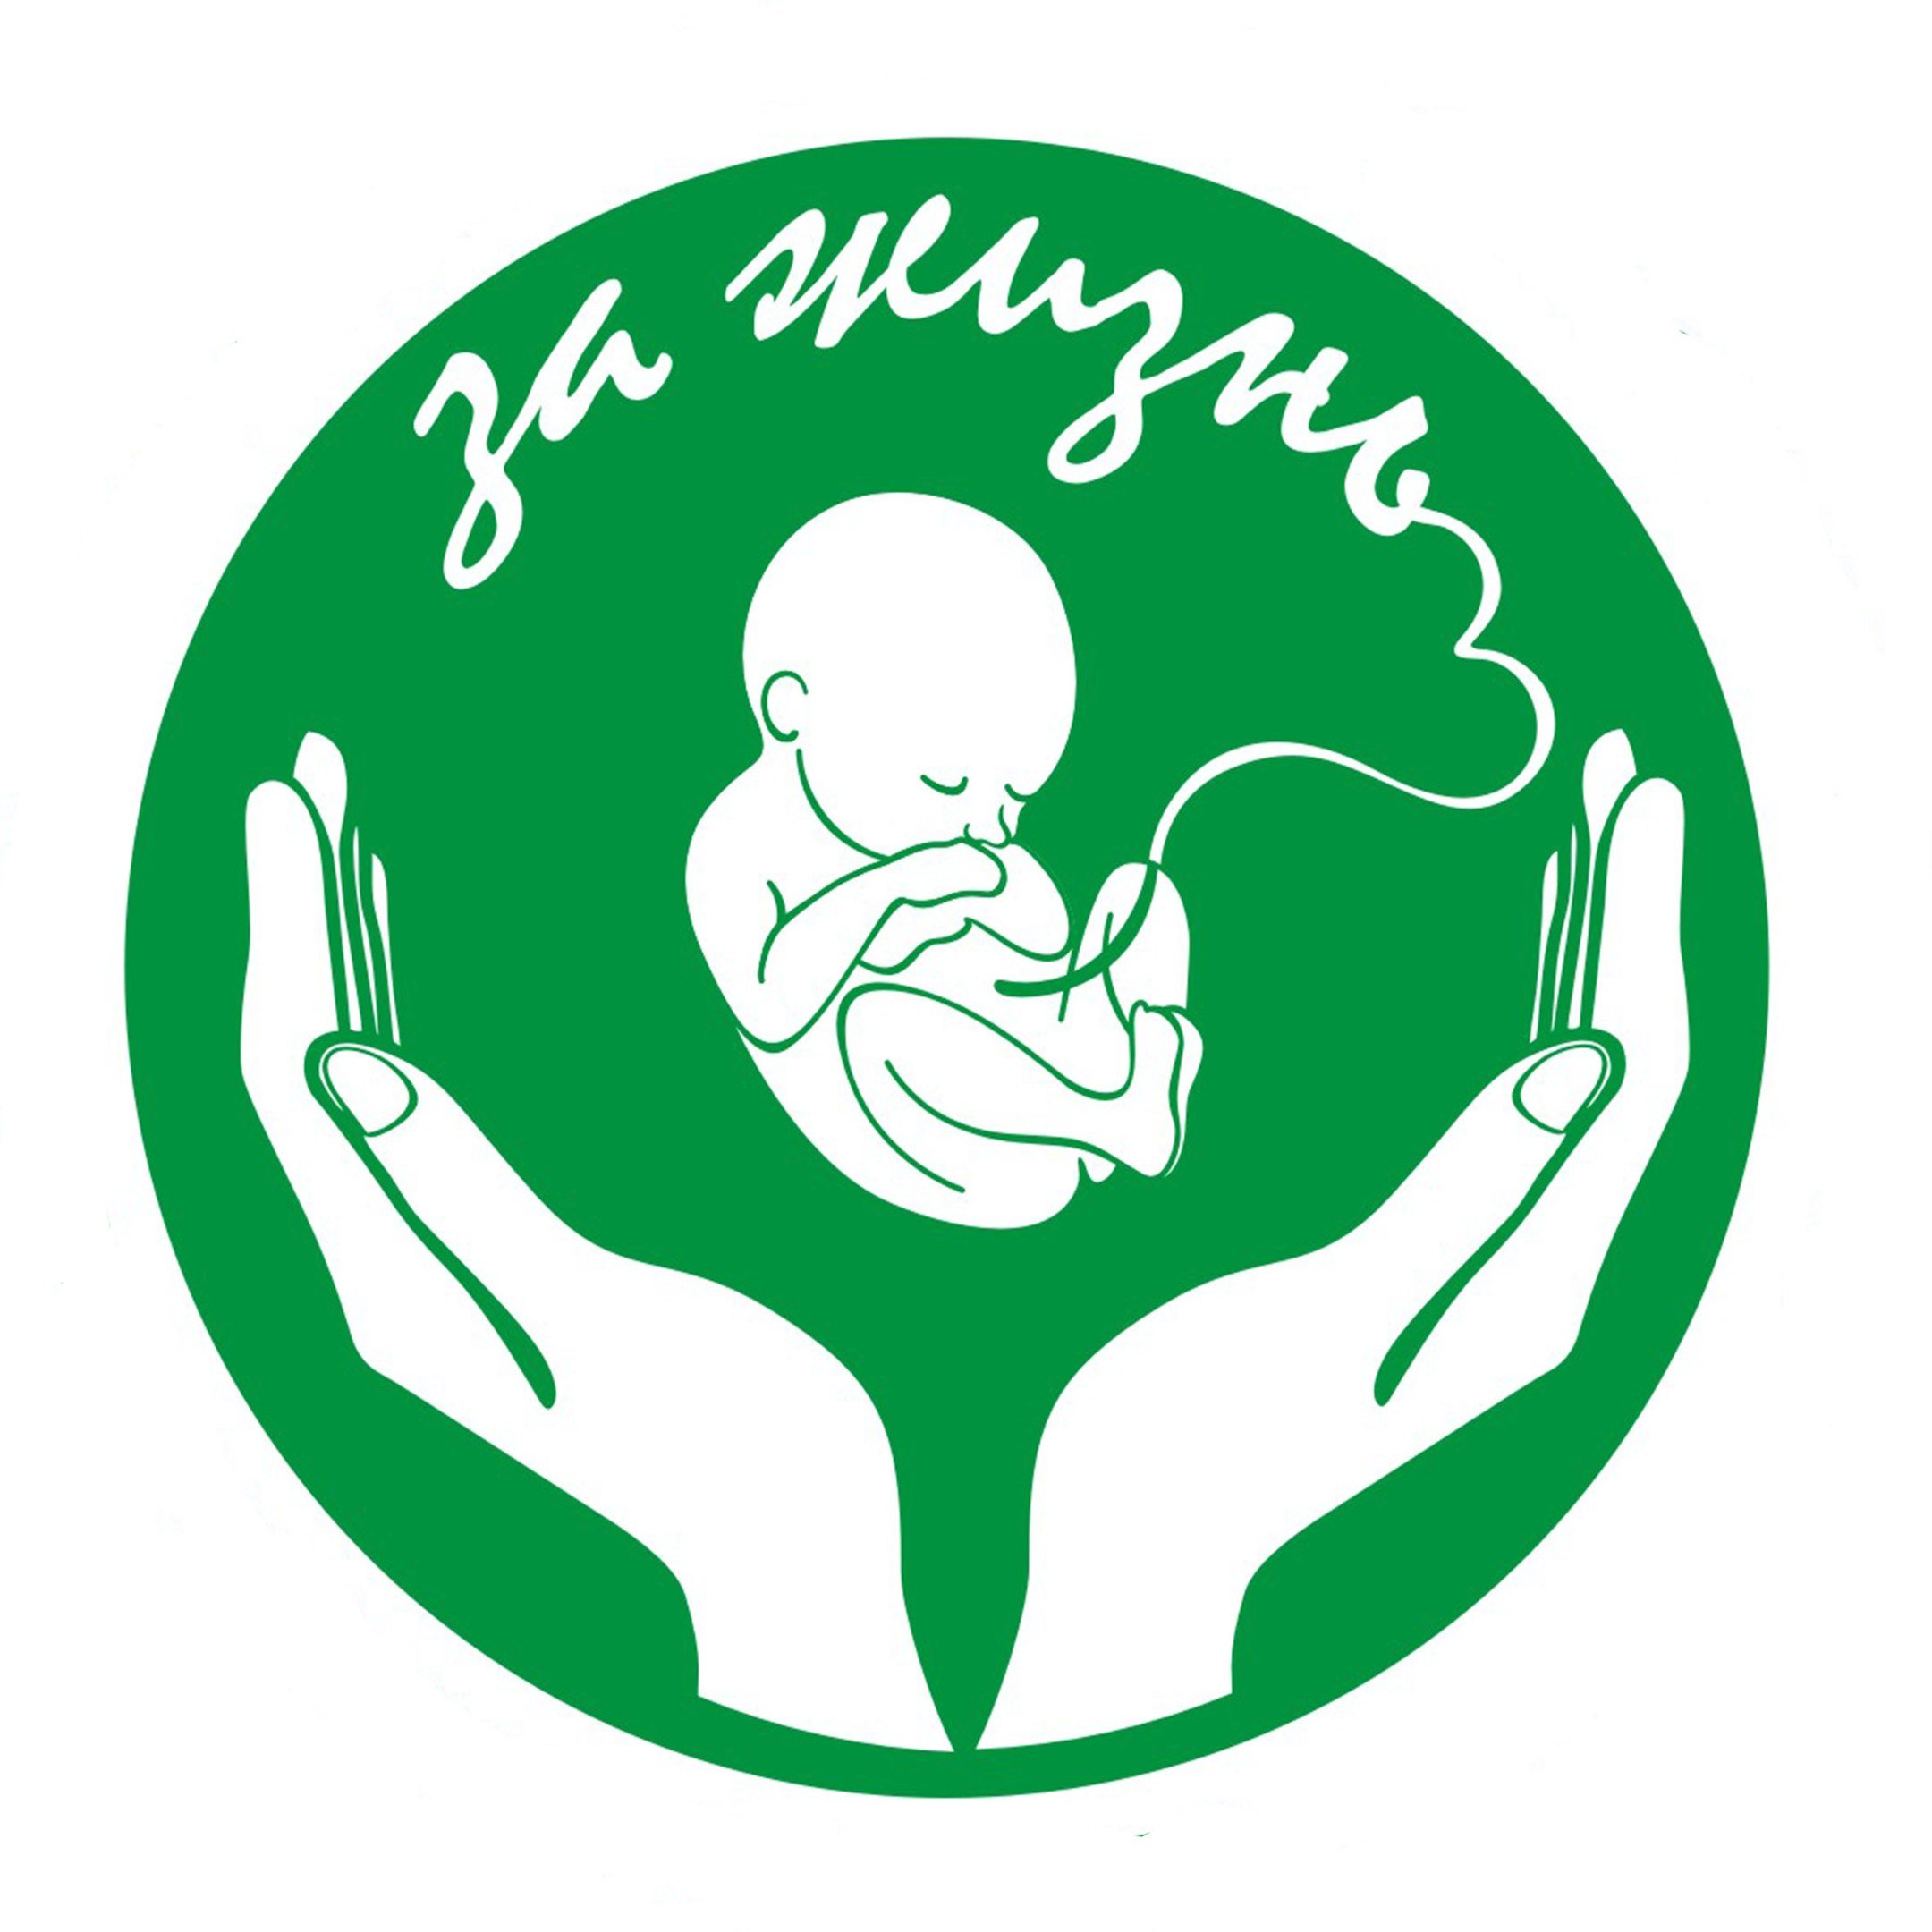 Дети защити жизнь. Общественная организация за жизнь. Эмблема акушерки. Общероссийское Общественное движение за жизнь. Эмблема движения за жизнь.